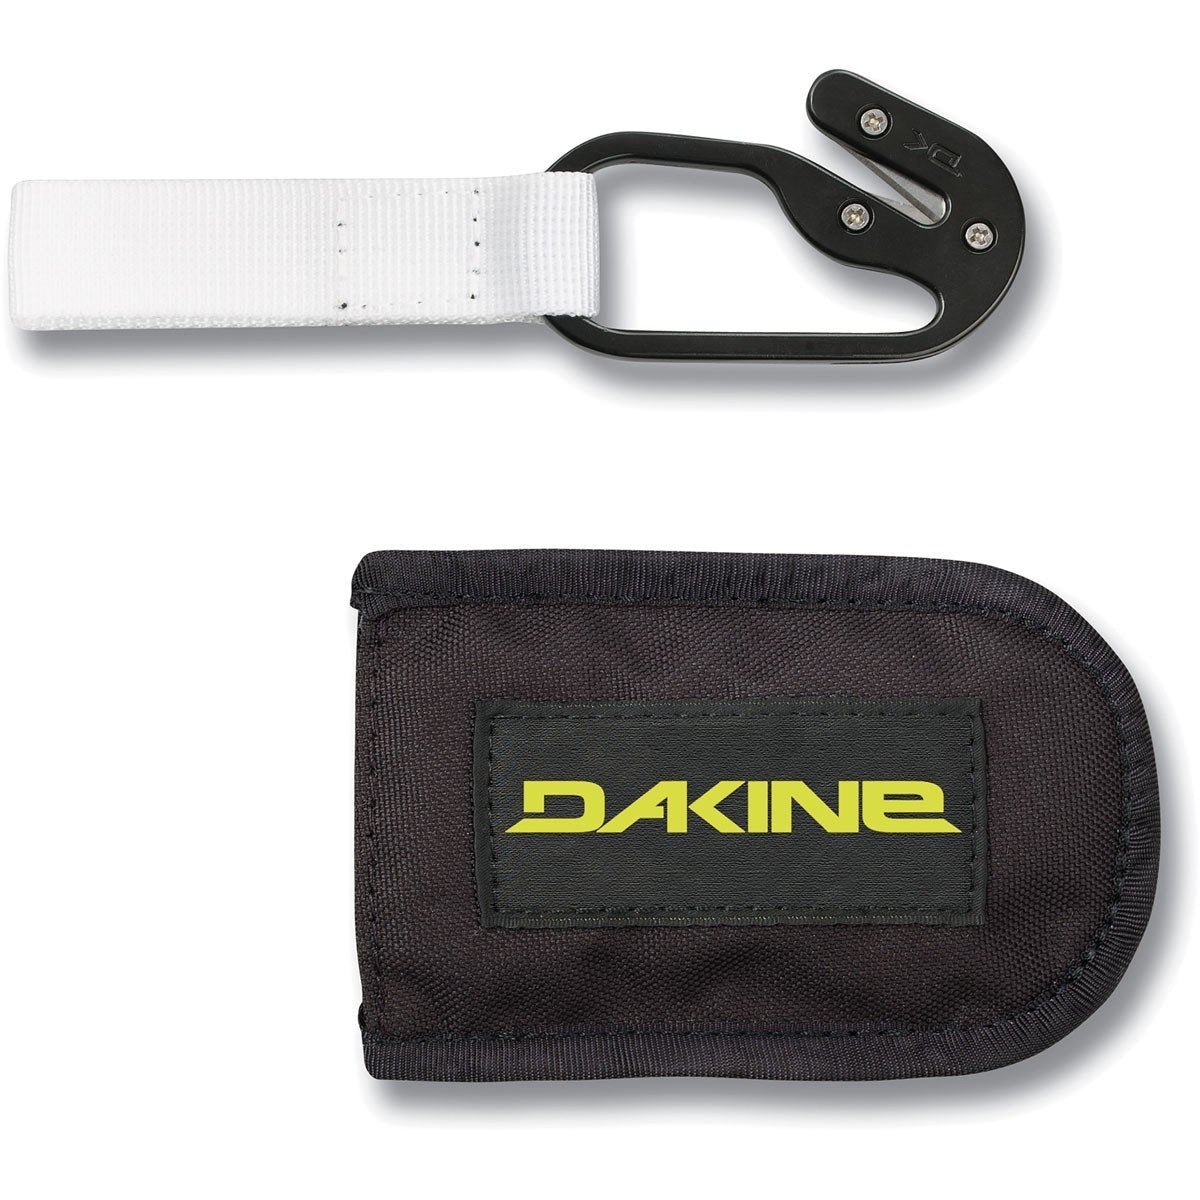 Dakine Dakine Hook Knife with Pouch KITEBOARD ACCESSORIES